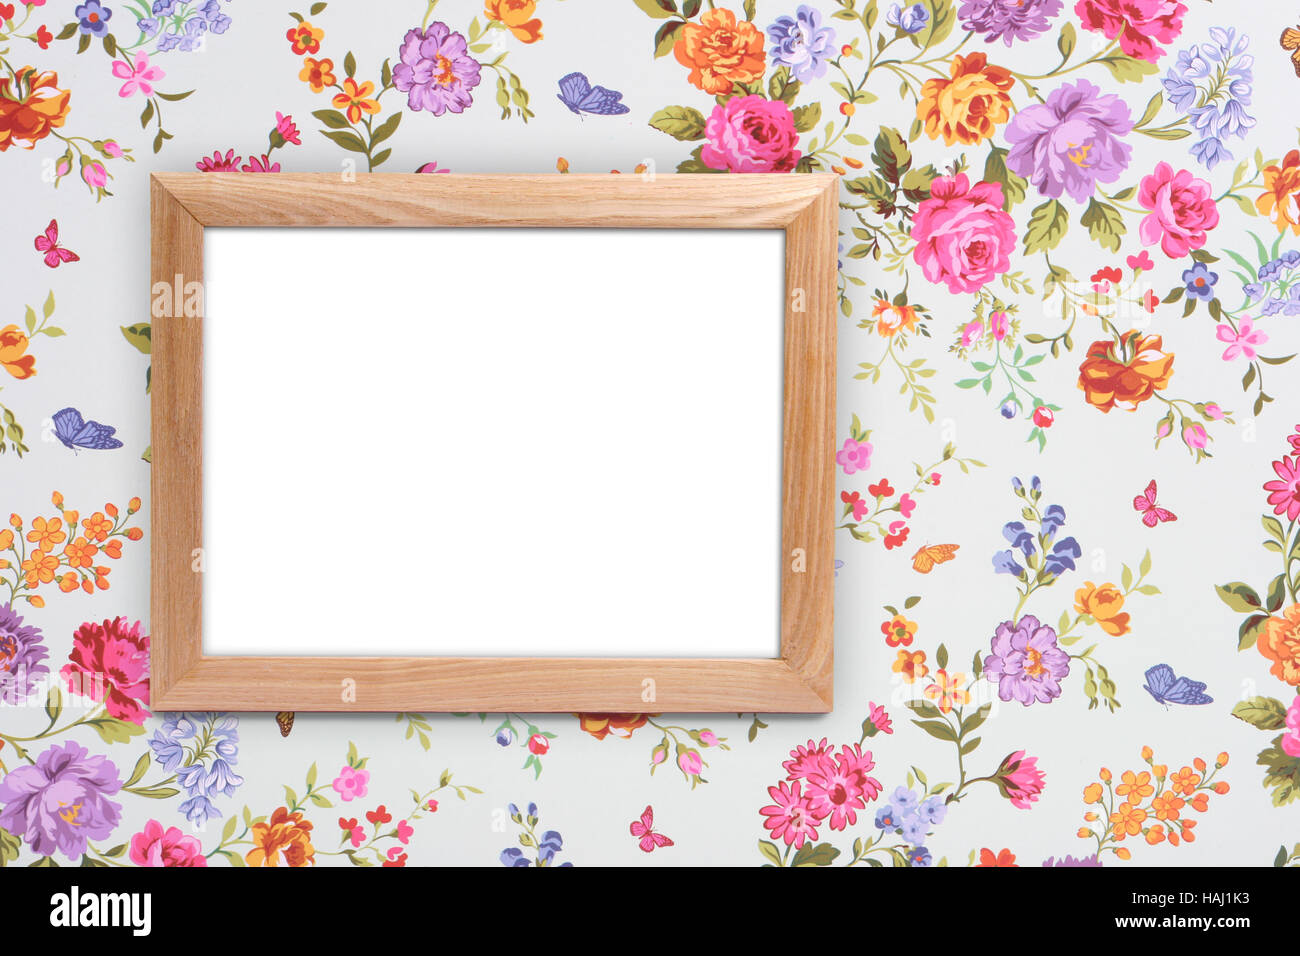 wood frame on vintage floral background Stock Photo